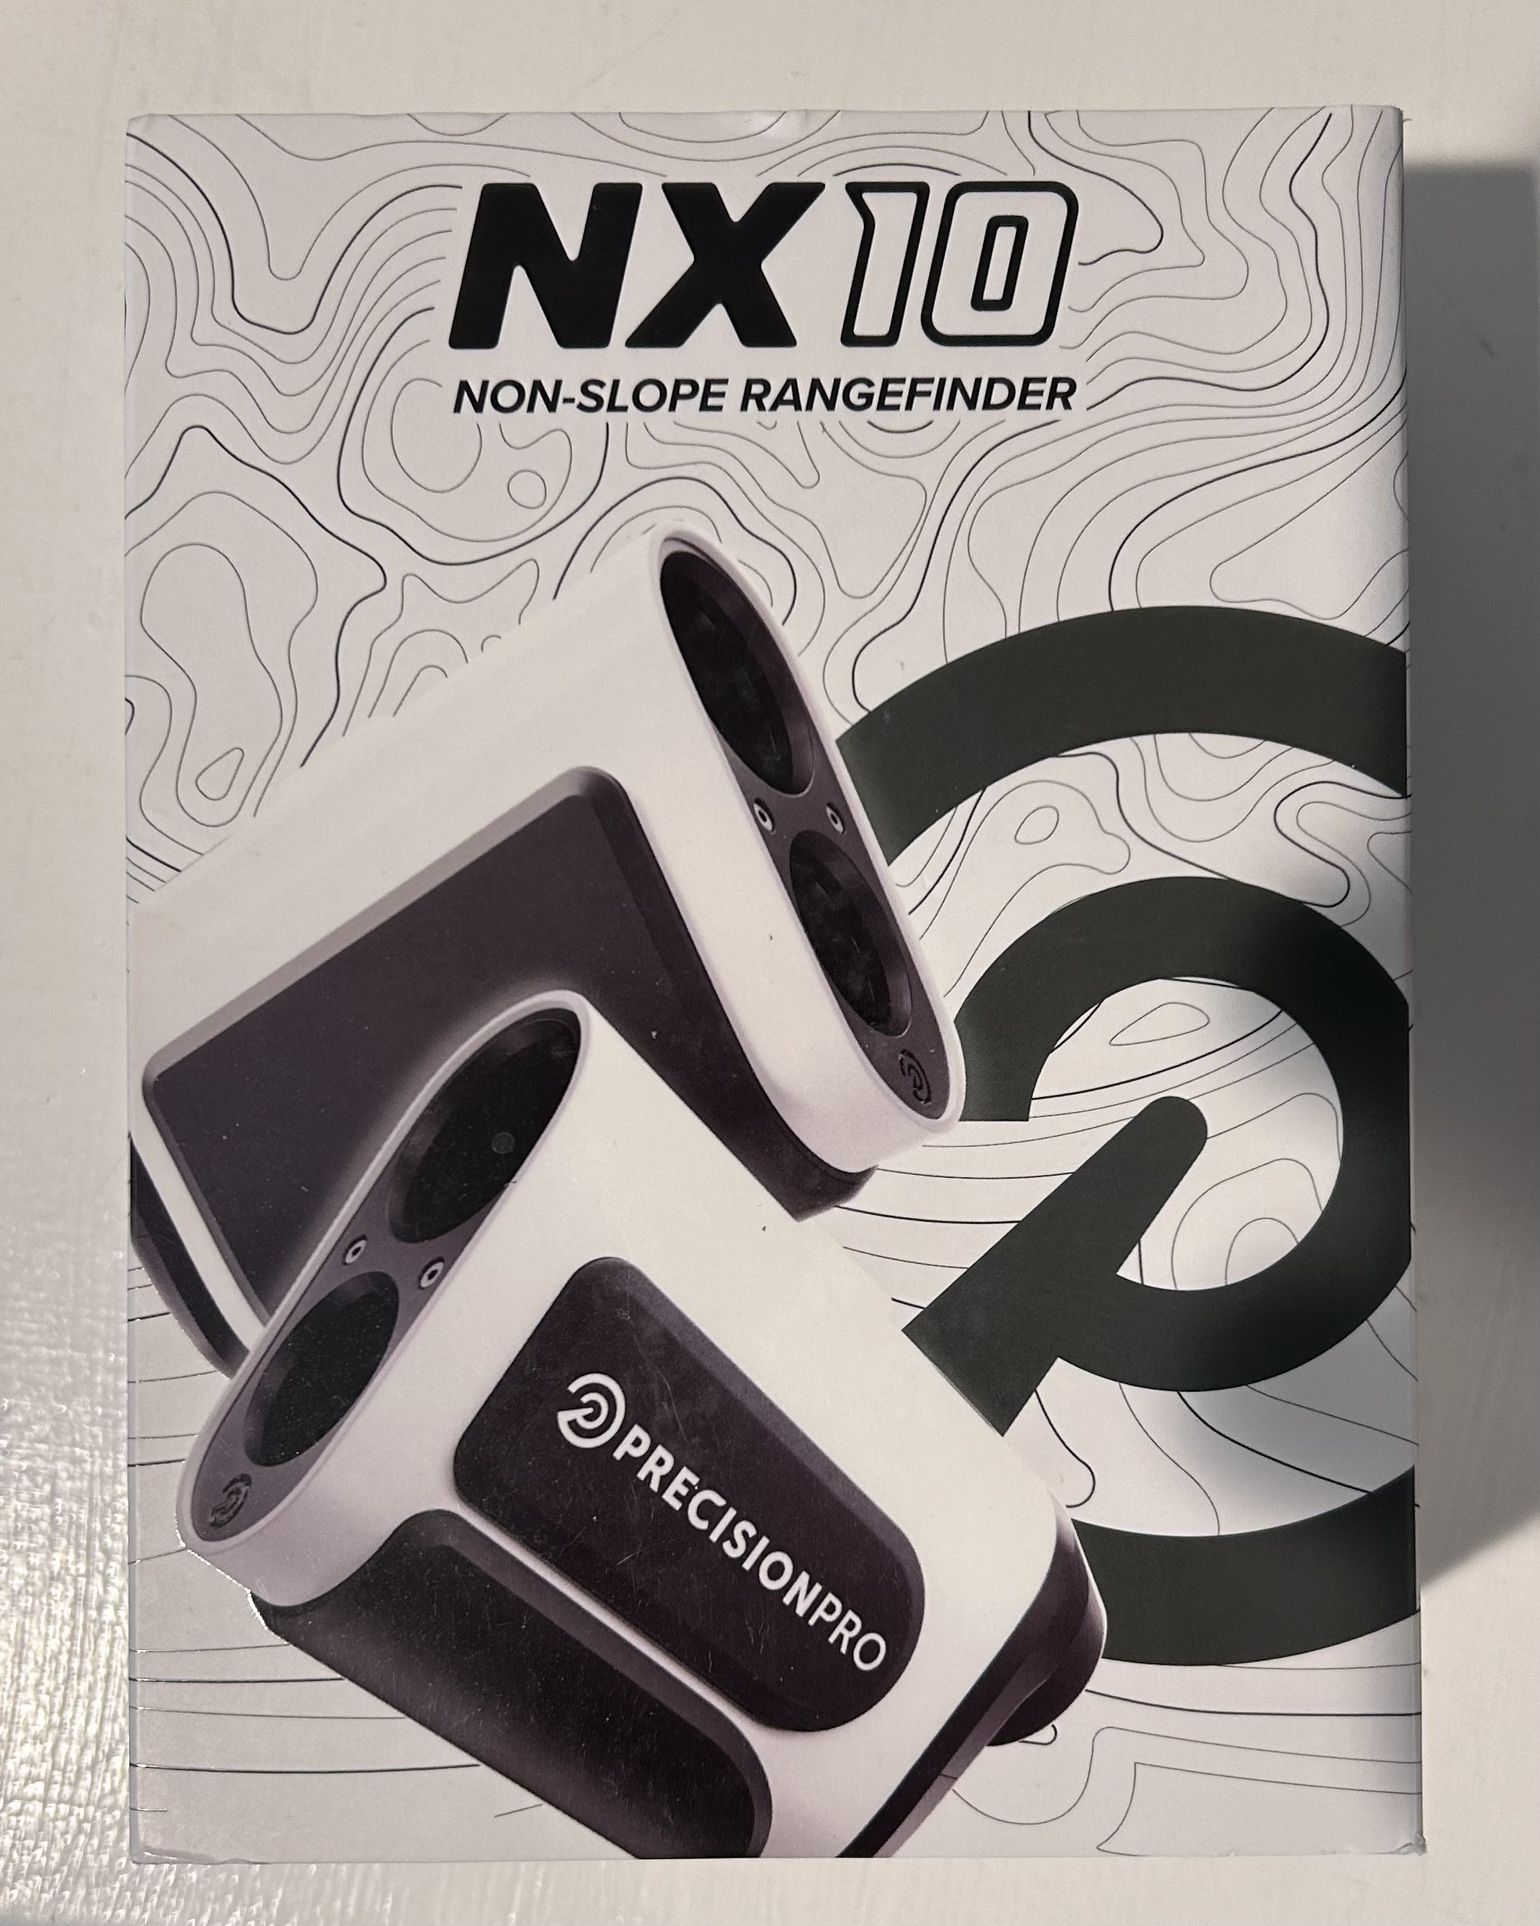 Non-slope NX10 Rangefinder